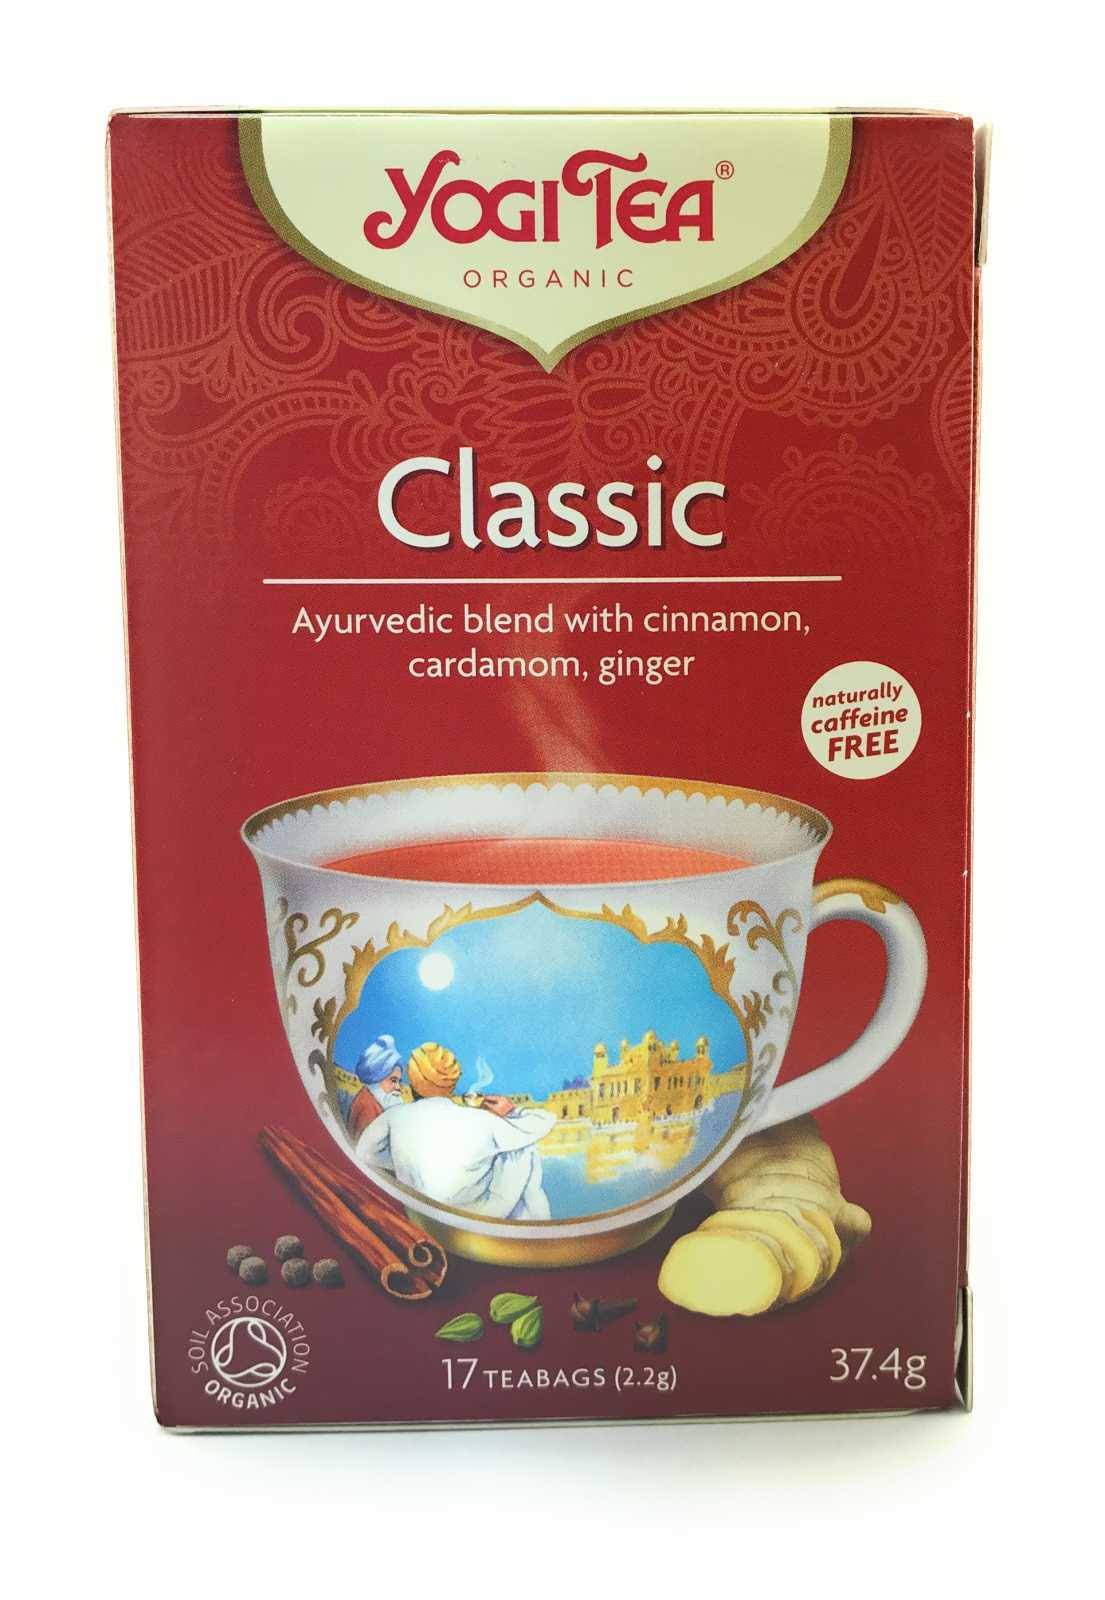 Yogi Tea Organic Classic Tea - 17 Teabags, 37.4g